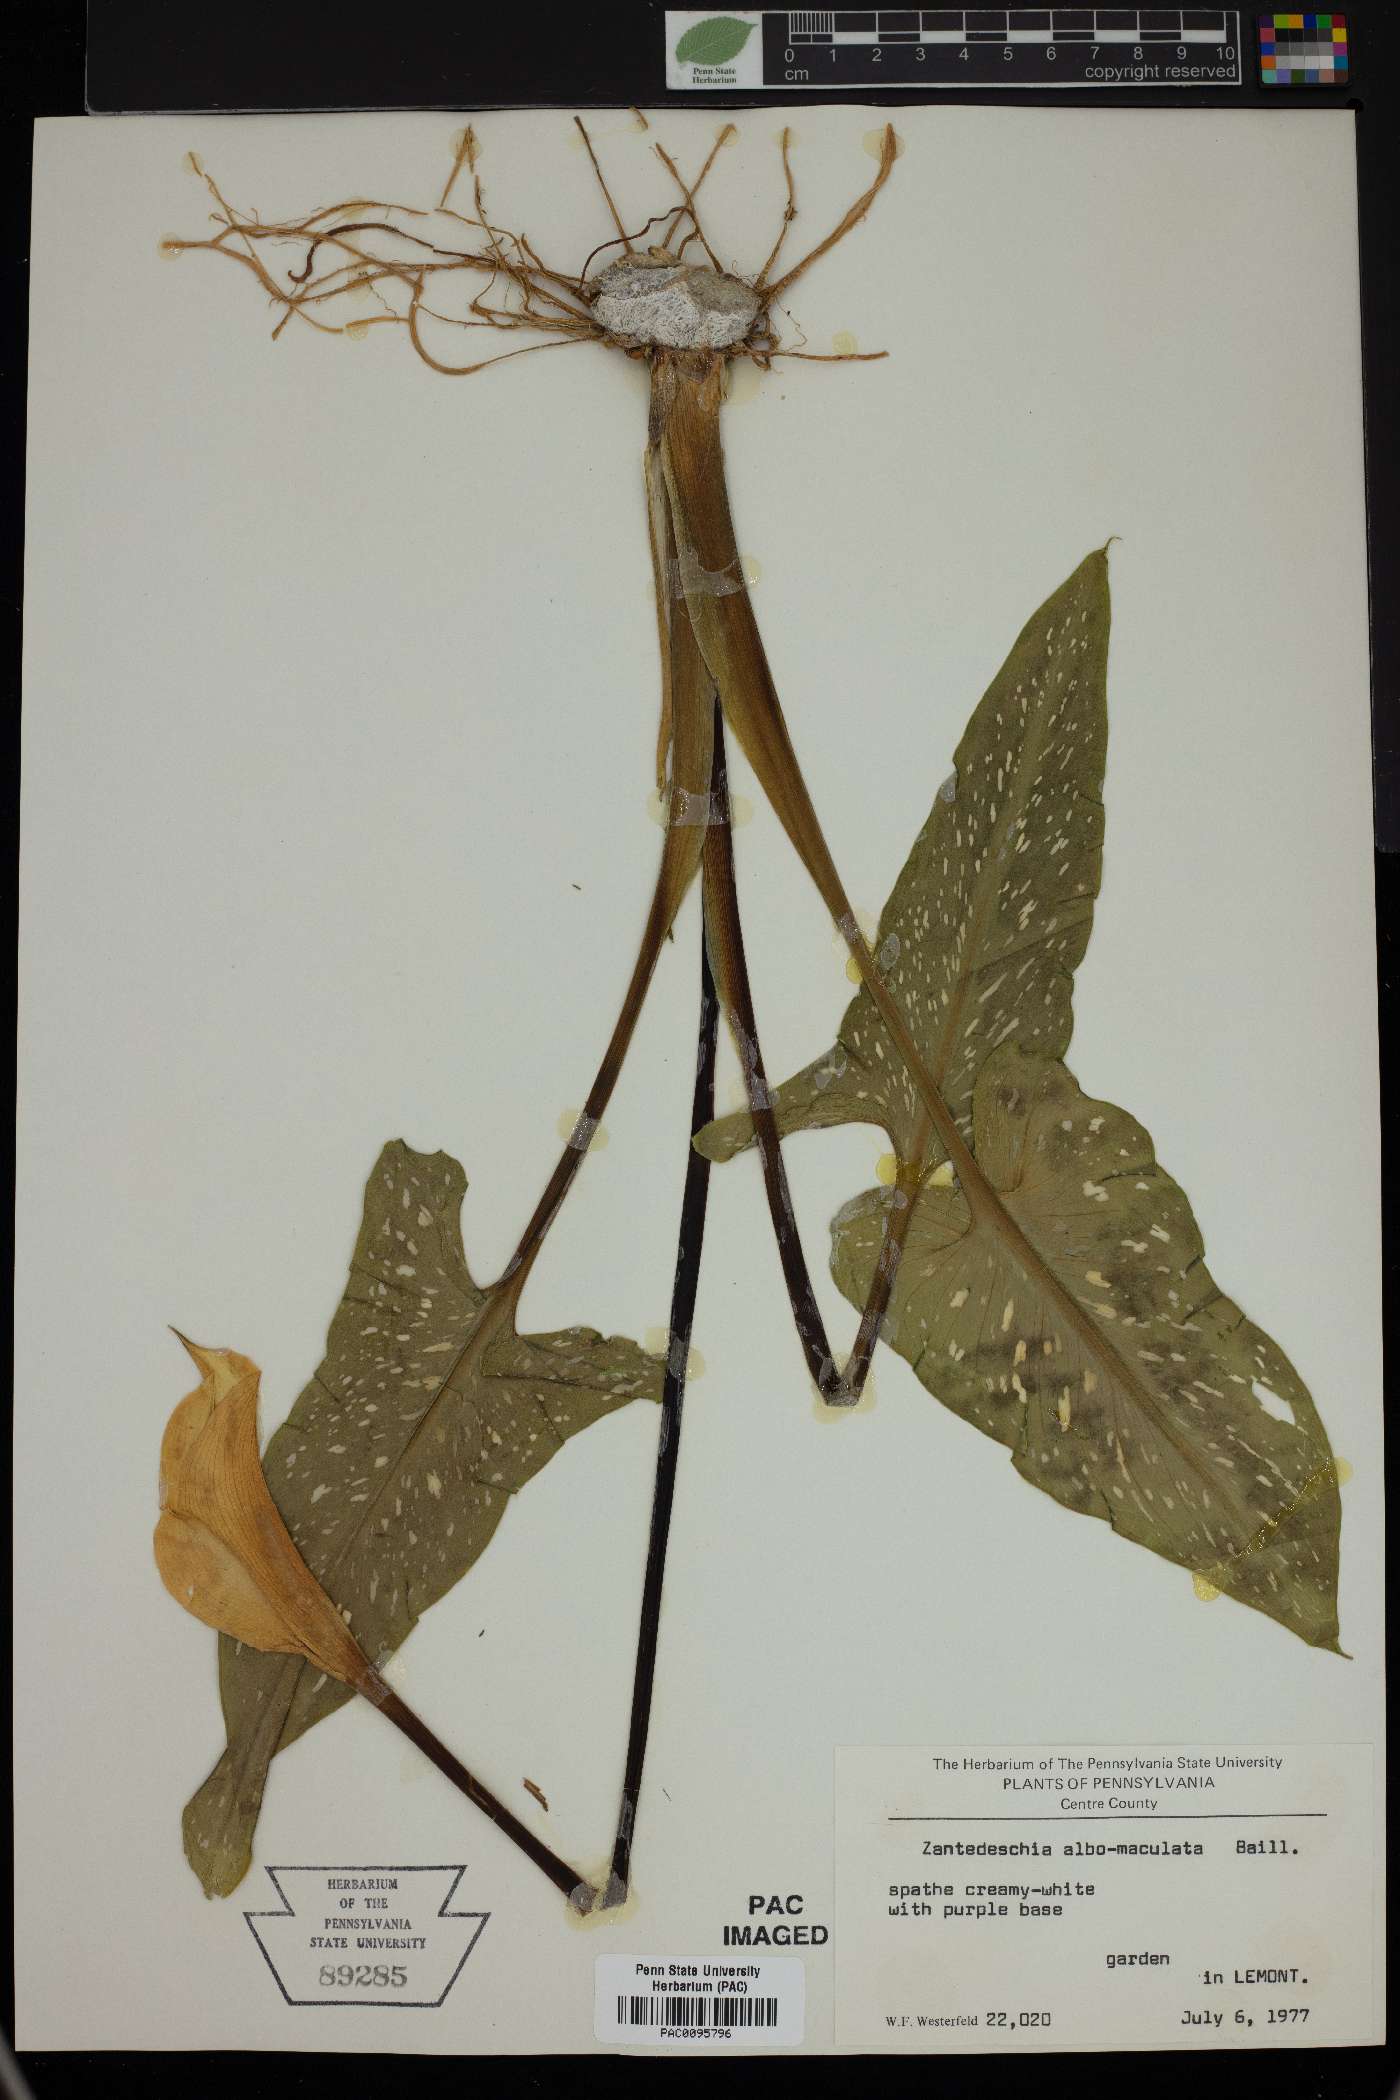 Zantedeschia albomaculata image